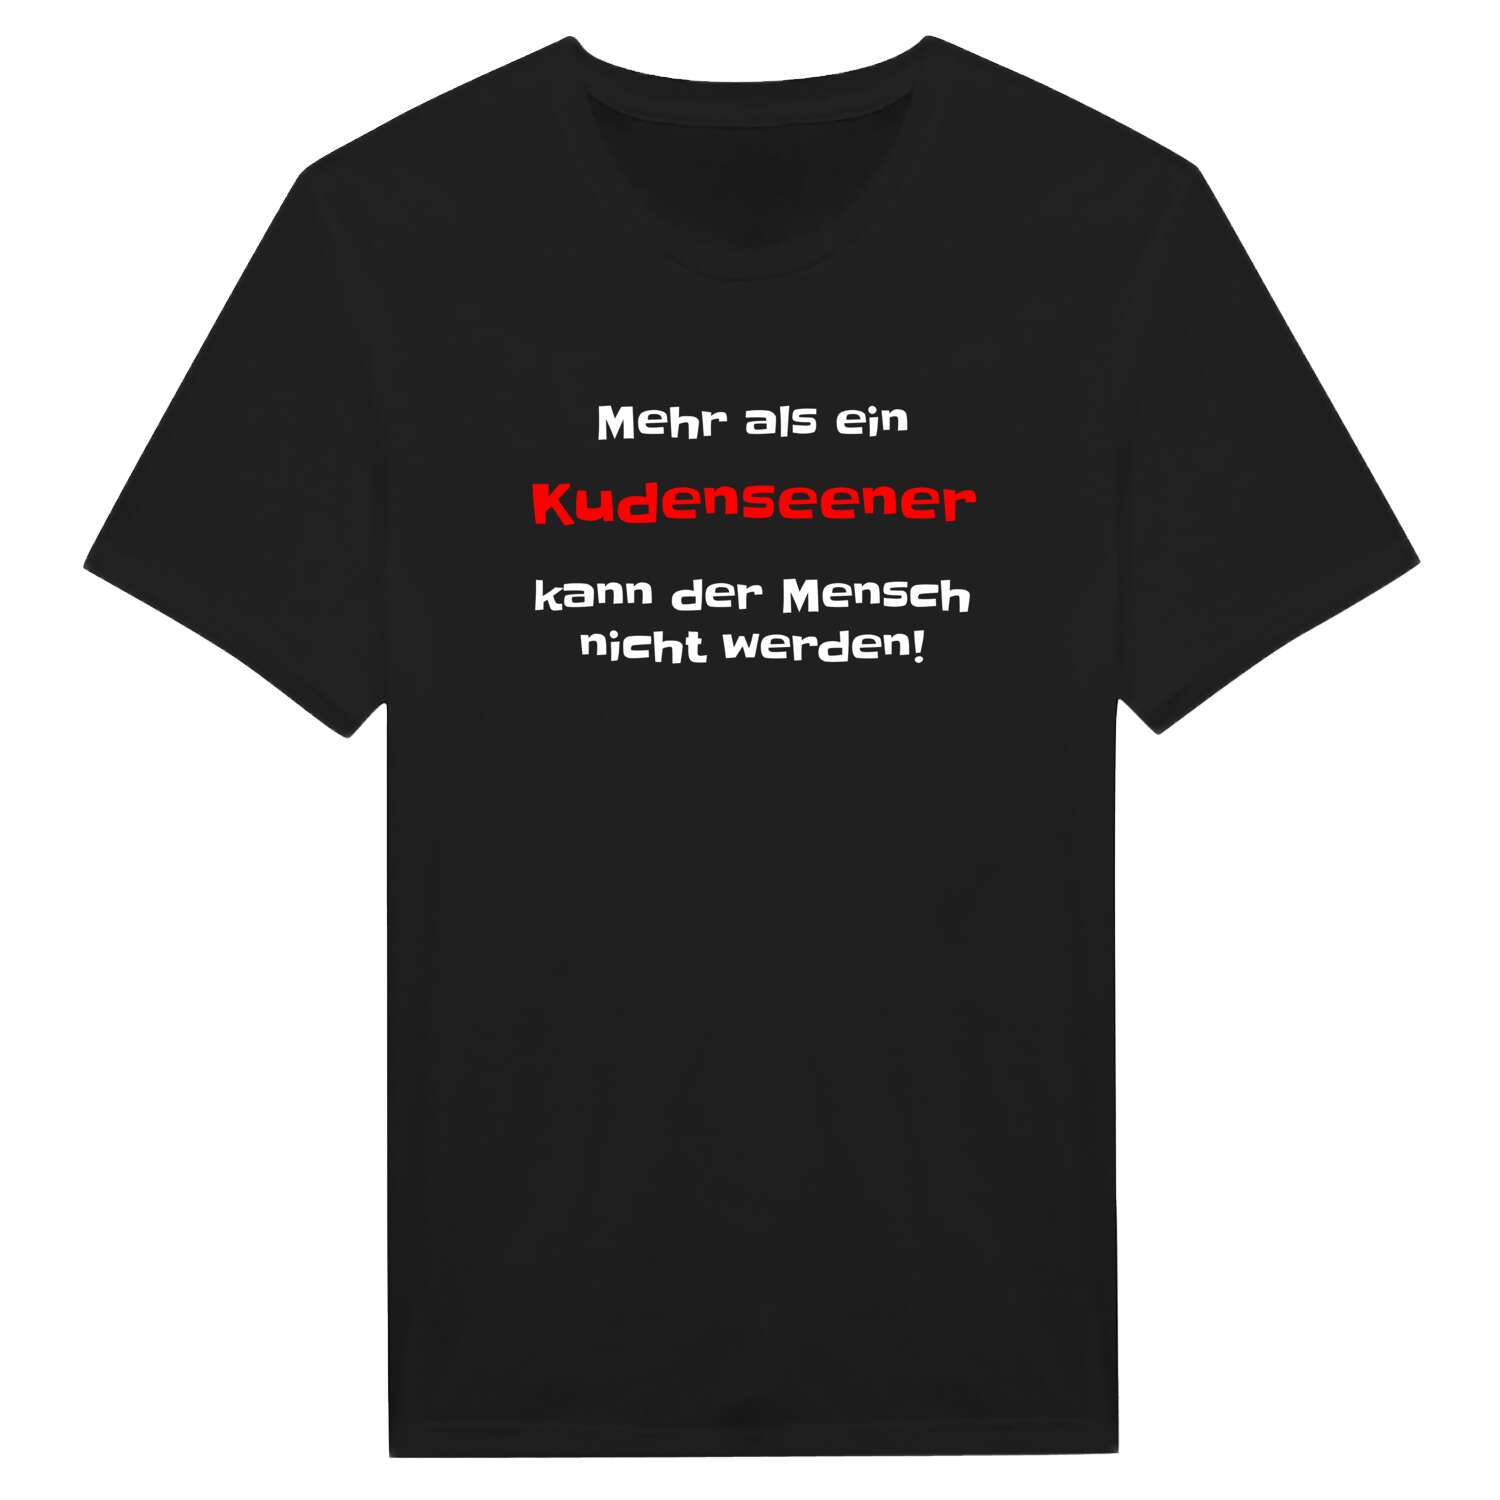 Kudensee T-Shirt »Mehr als ein«